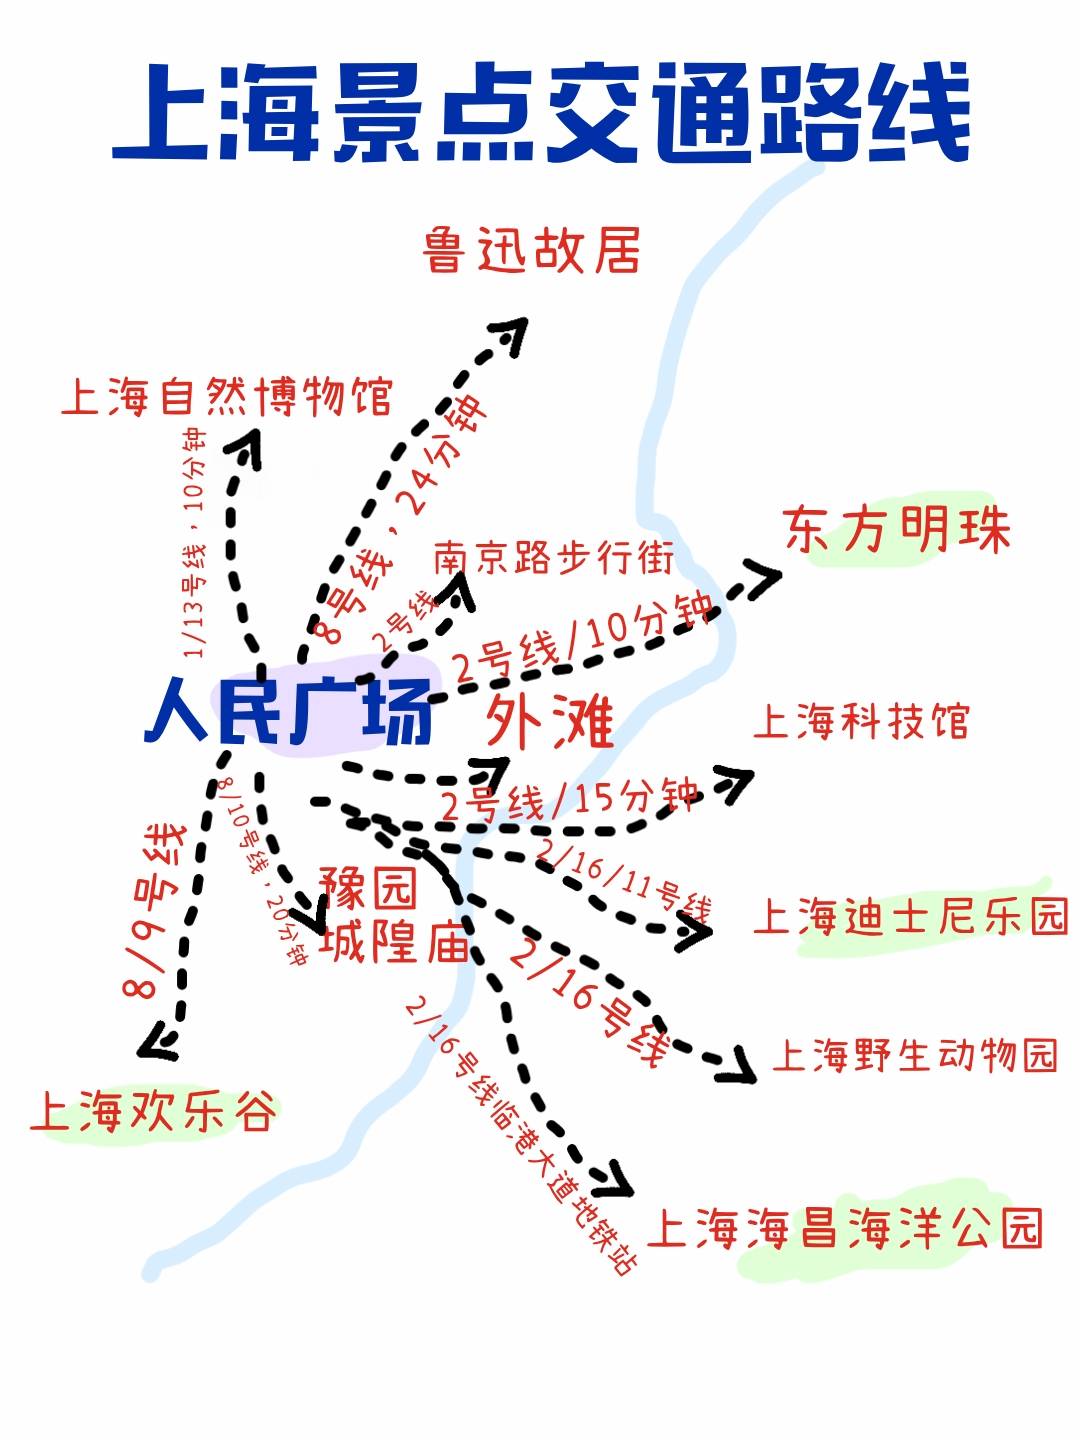 上海五一旅游详细攻略景区活动游玩路线